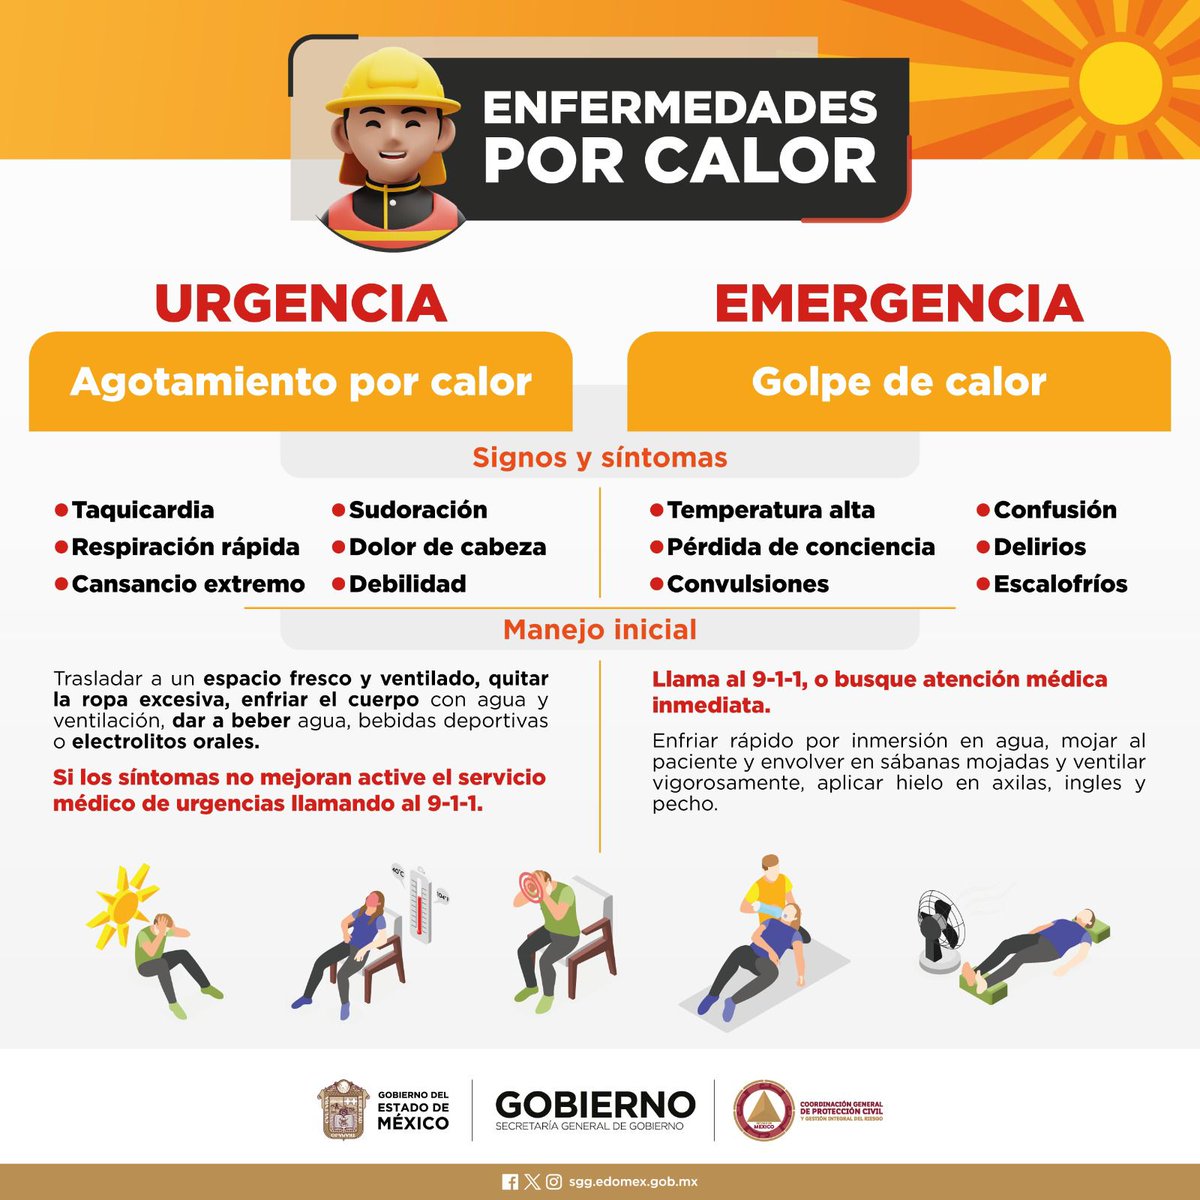 No olvides que la radiación UV se registra a niveles altos en el #EstadoDeMéxico, te compartimos una serie de recomendaciones que emite @pciviledomex para cuidarnos de las altas temperaturas.
¡Protégete de esta #OlaDeCalor!
@SGGEdomex